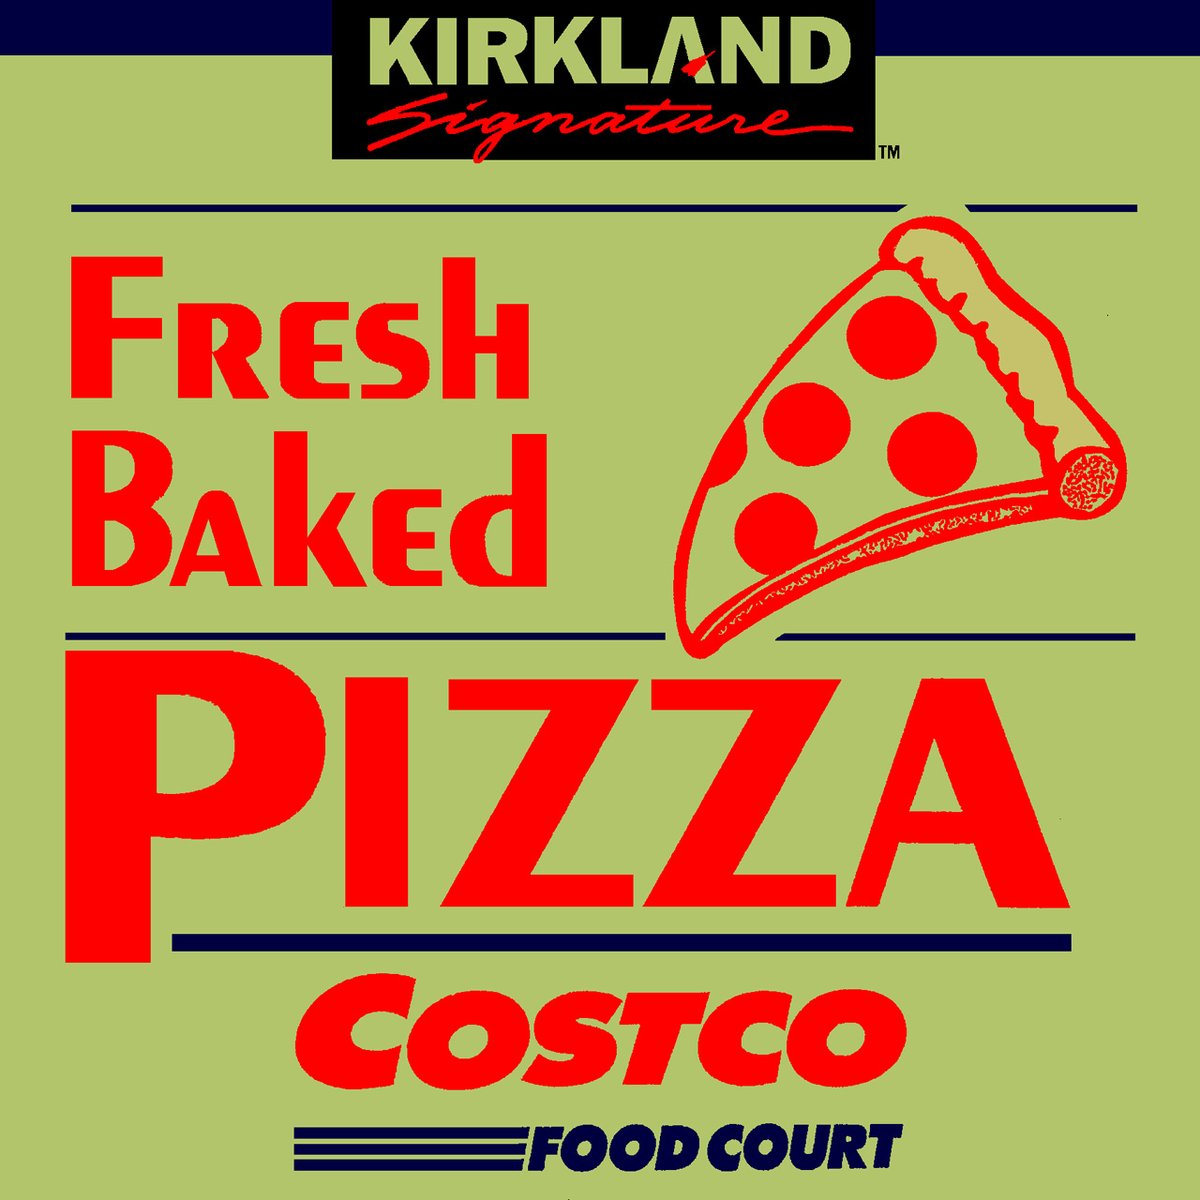 にょほほ電鉄 בטוויטר コストコ のピザのパッケージの ピザのイラストが カワイイので お絵描きしてみました